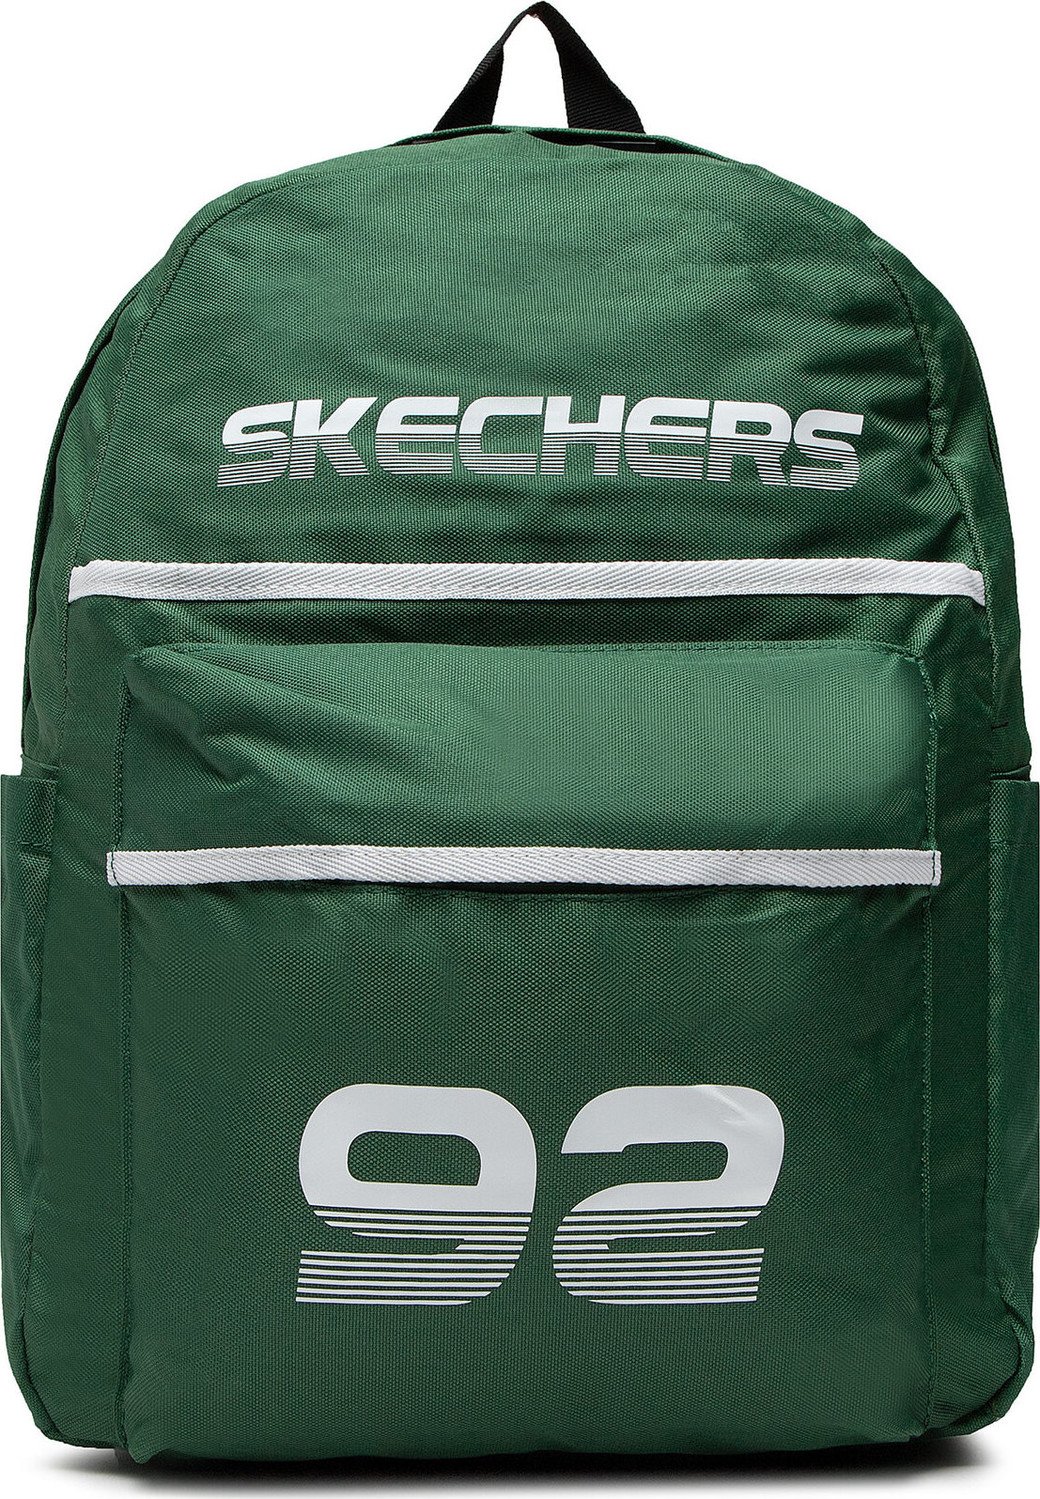 Batoh Skechers S979.18 Zelená